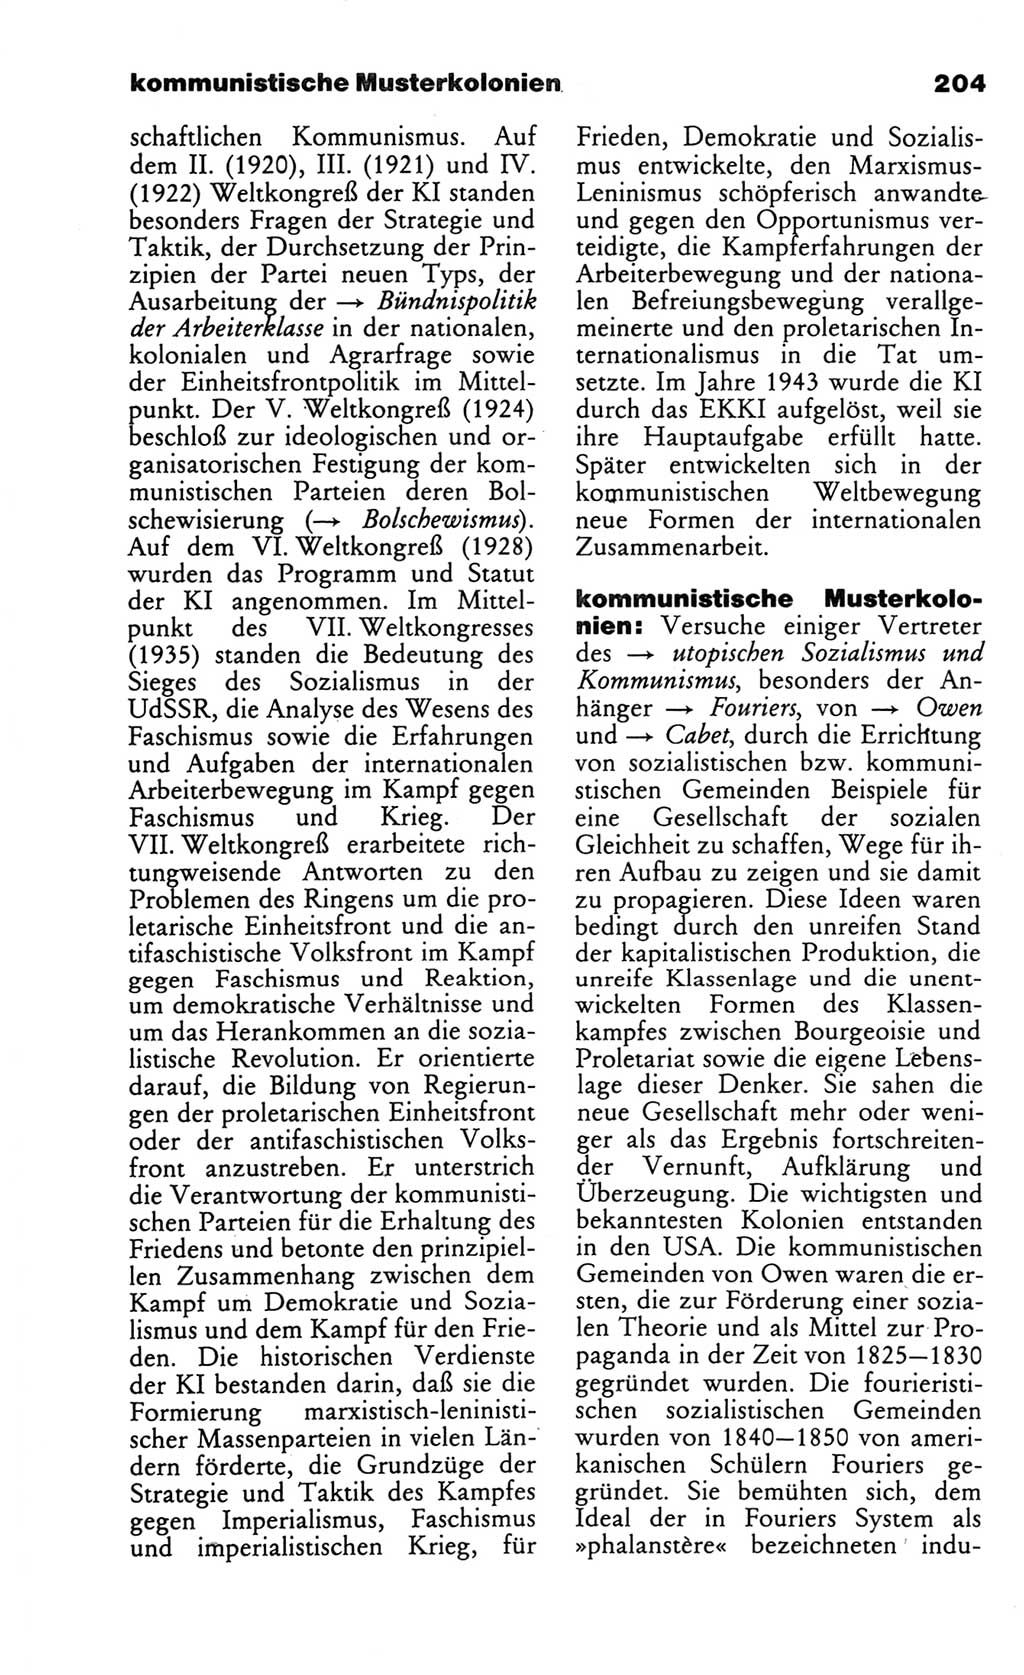 Wörterbuch des wissenschaftlichen Kommunismus [Deutsche Demokratische Republik (DDR)] 1986, Seite 204 (Wb. wiss. Komm. DDR 1986, S. 204)